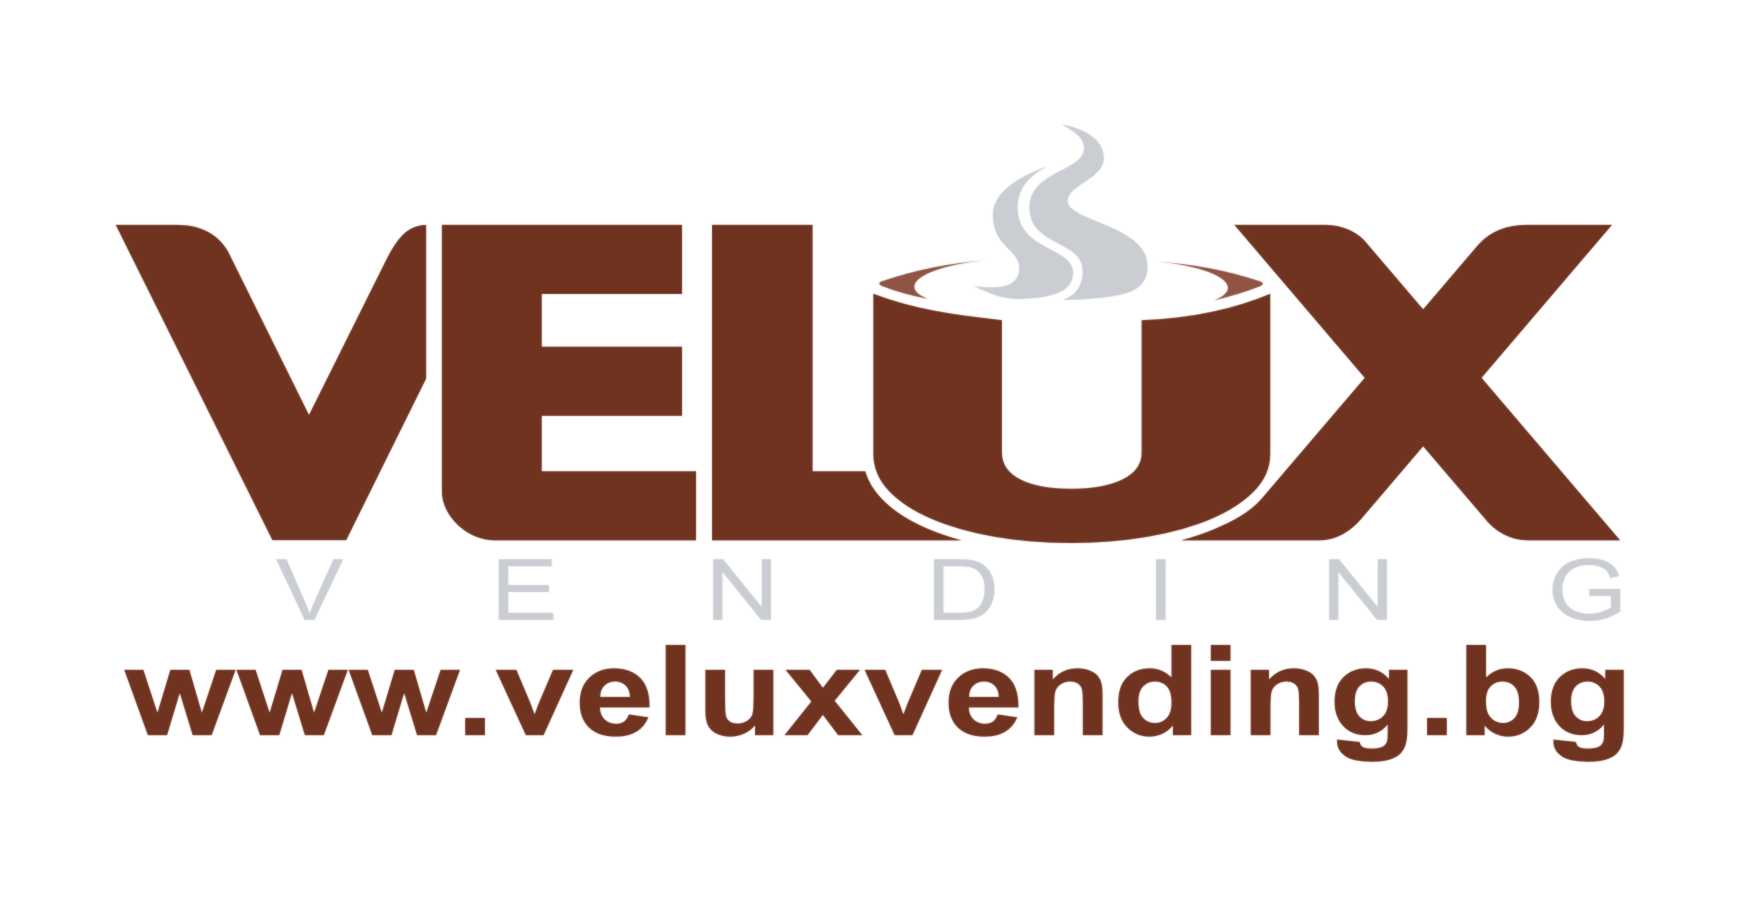 VELUX Logo - Velux Vending Vending Venture